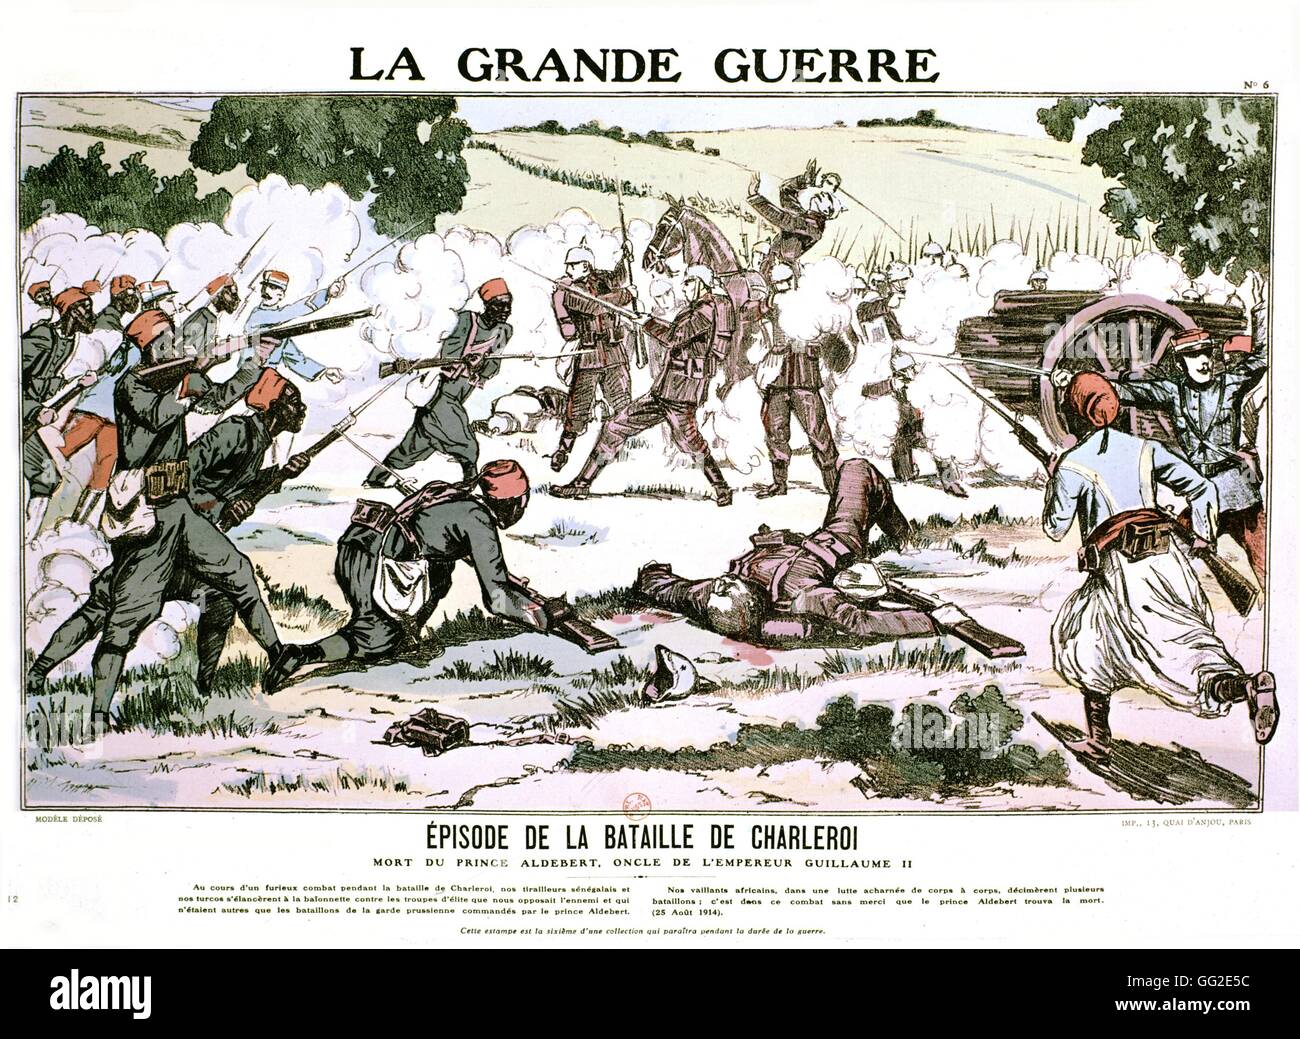 Impression populaire : la bataille de Charleroi France, la Première Guerre mondiale Banque D'Images